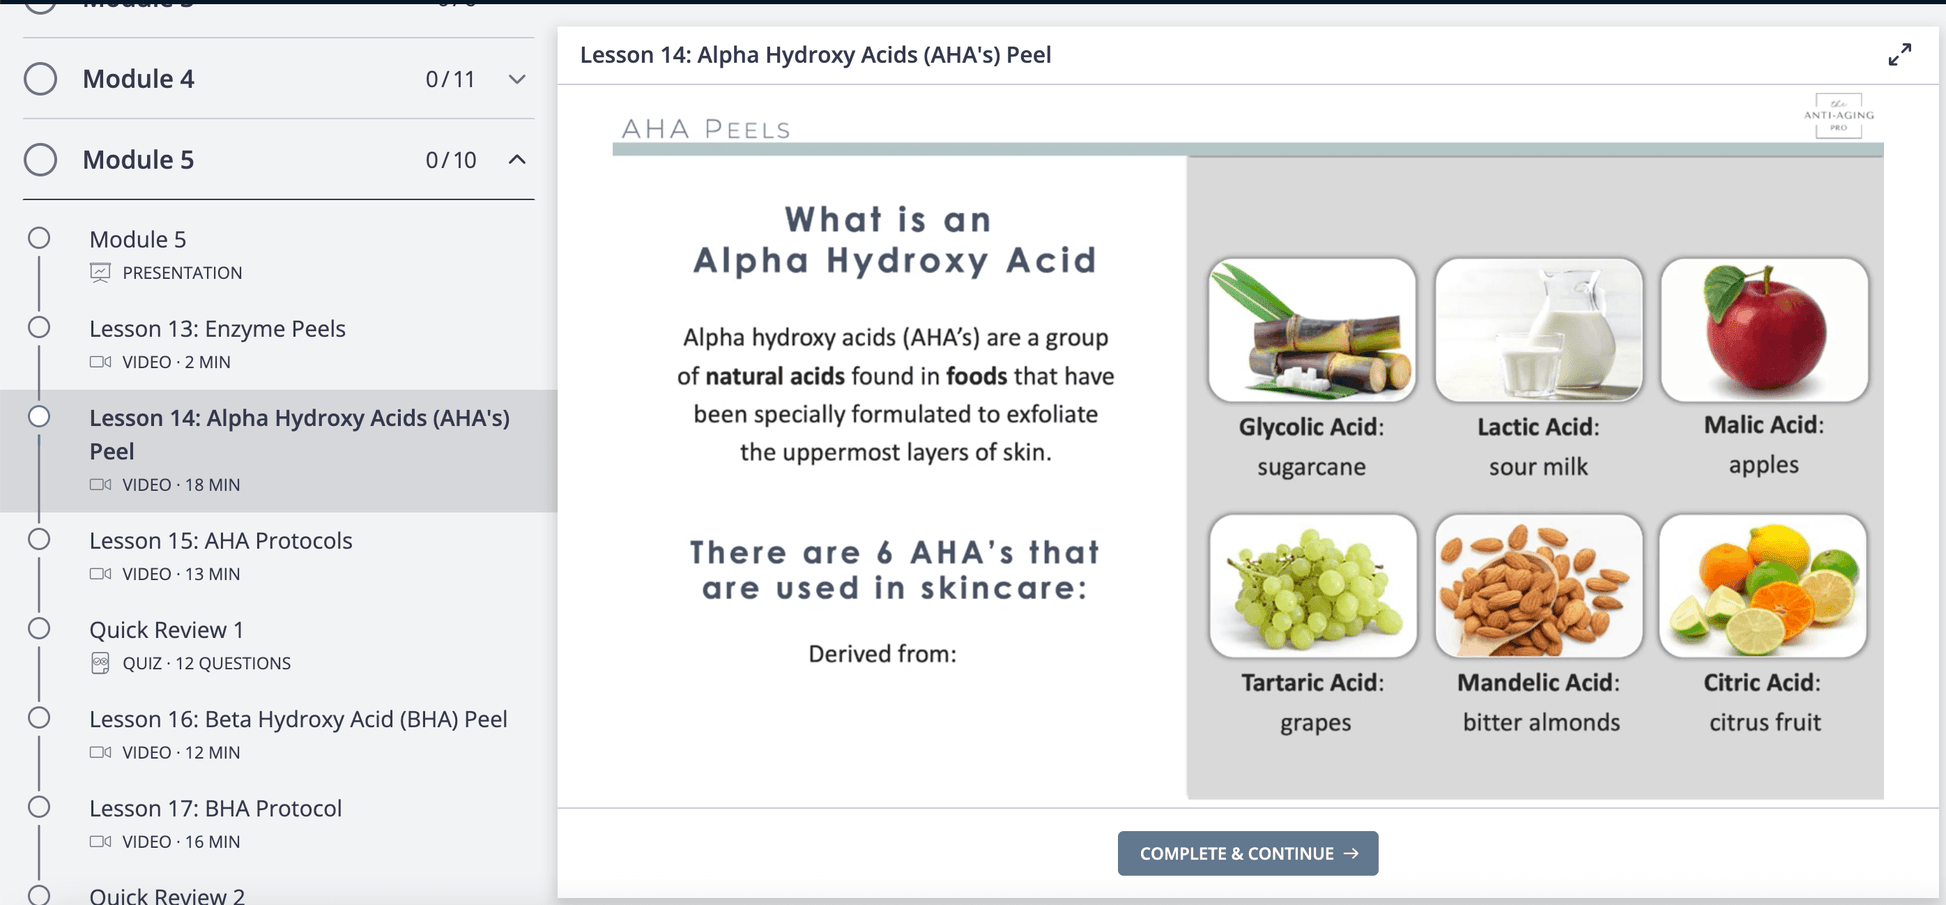 Alpha Hydroxy Acid (AHA) Peels such as Glycolic Acid, Lactic Acid, Malic Acid, Mandelic Acid, Citric Acid